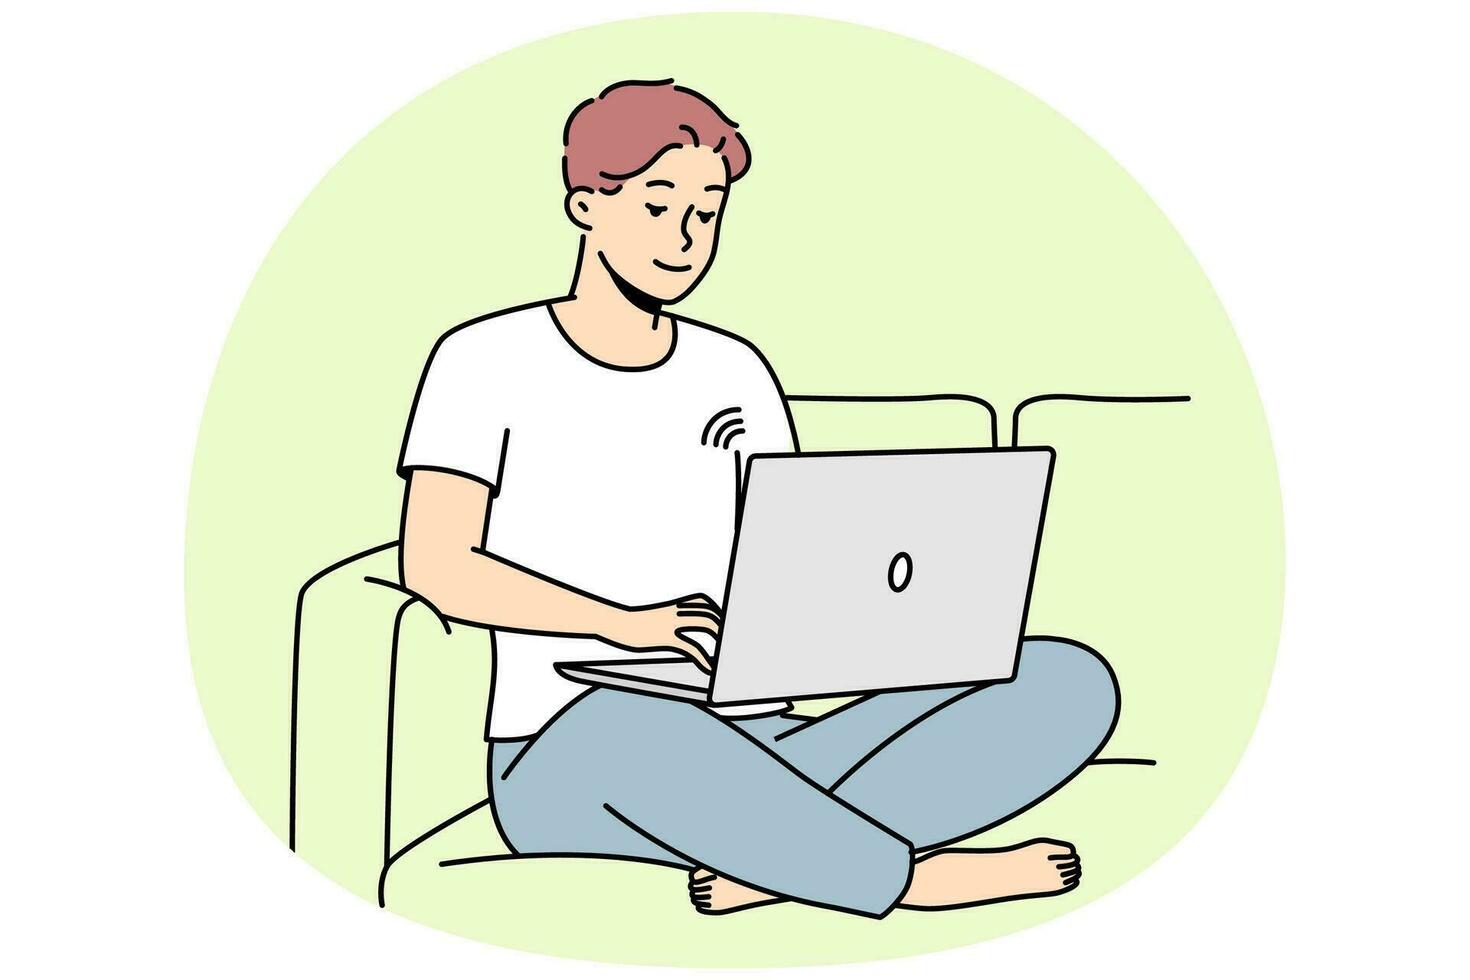 leende kille sitta på soffa arbetssätt på bärbar dator använder sig av trådlös nätverk. Lycklig ung man koppla av på soffa bläddra internet på dator. vektor illustration.